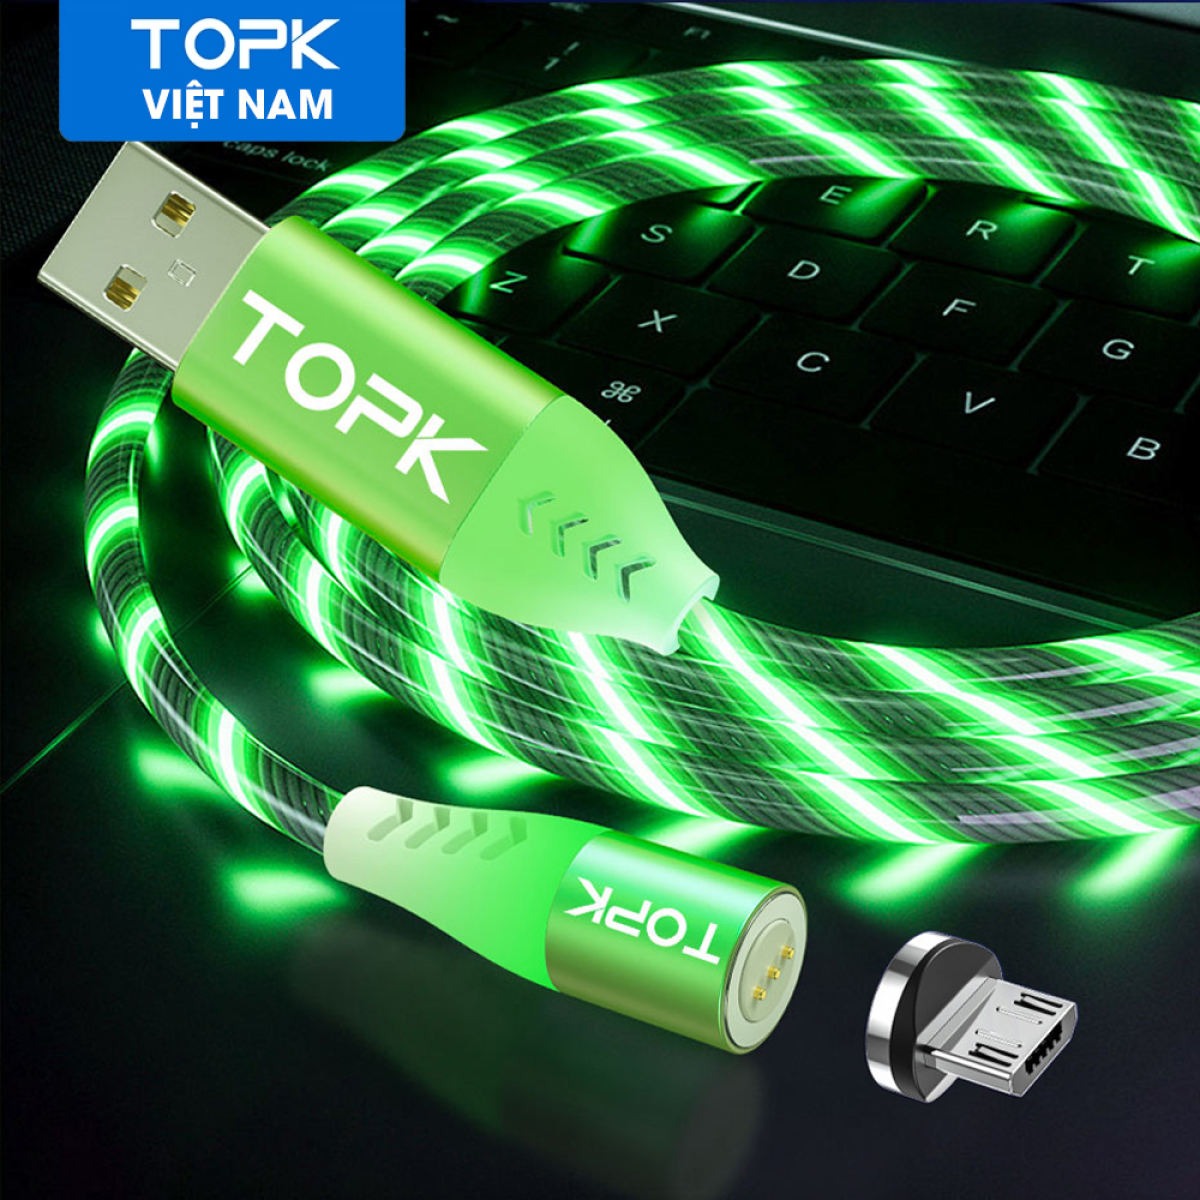 HÀNG CHÍNH HÃNG - Cáp điện thoại đèn LED phát sáng TOPK AM67 USB - Micro Từ Tính Dành Cho Samsung, Xiaomi, Huawei,... - Phân phối bởi TOPK VIỆT NAM